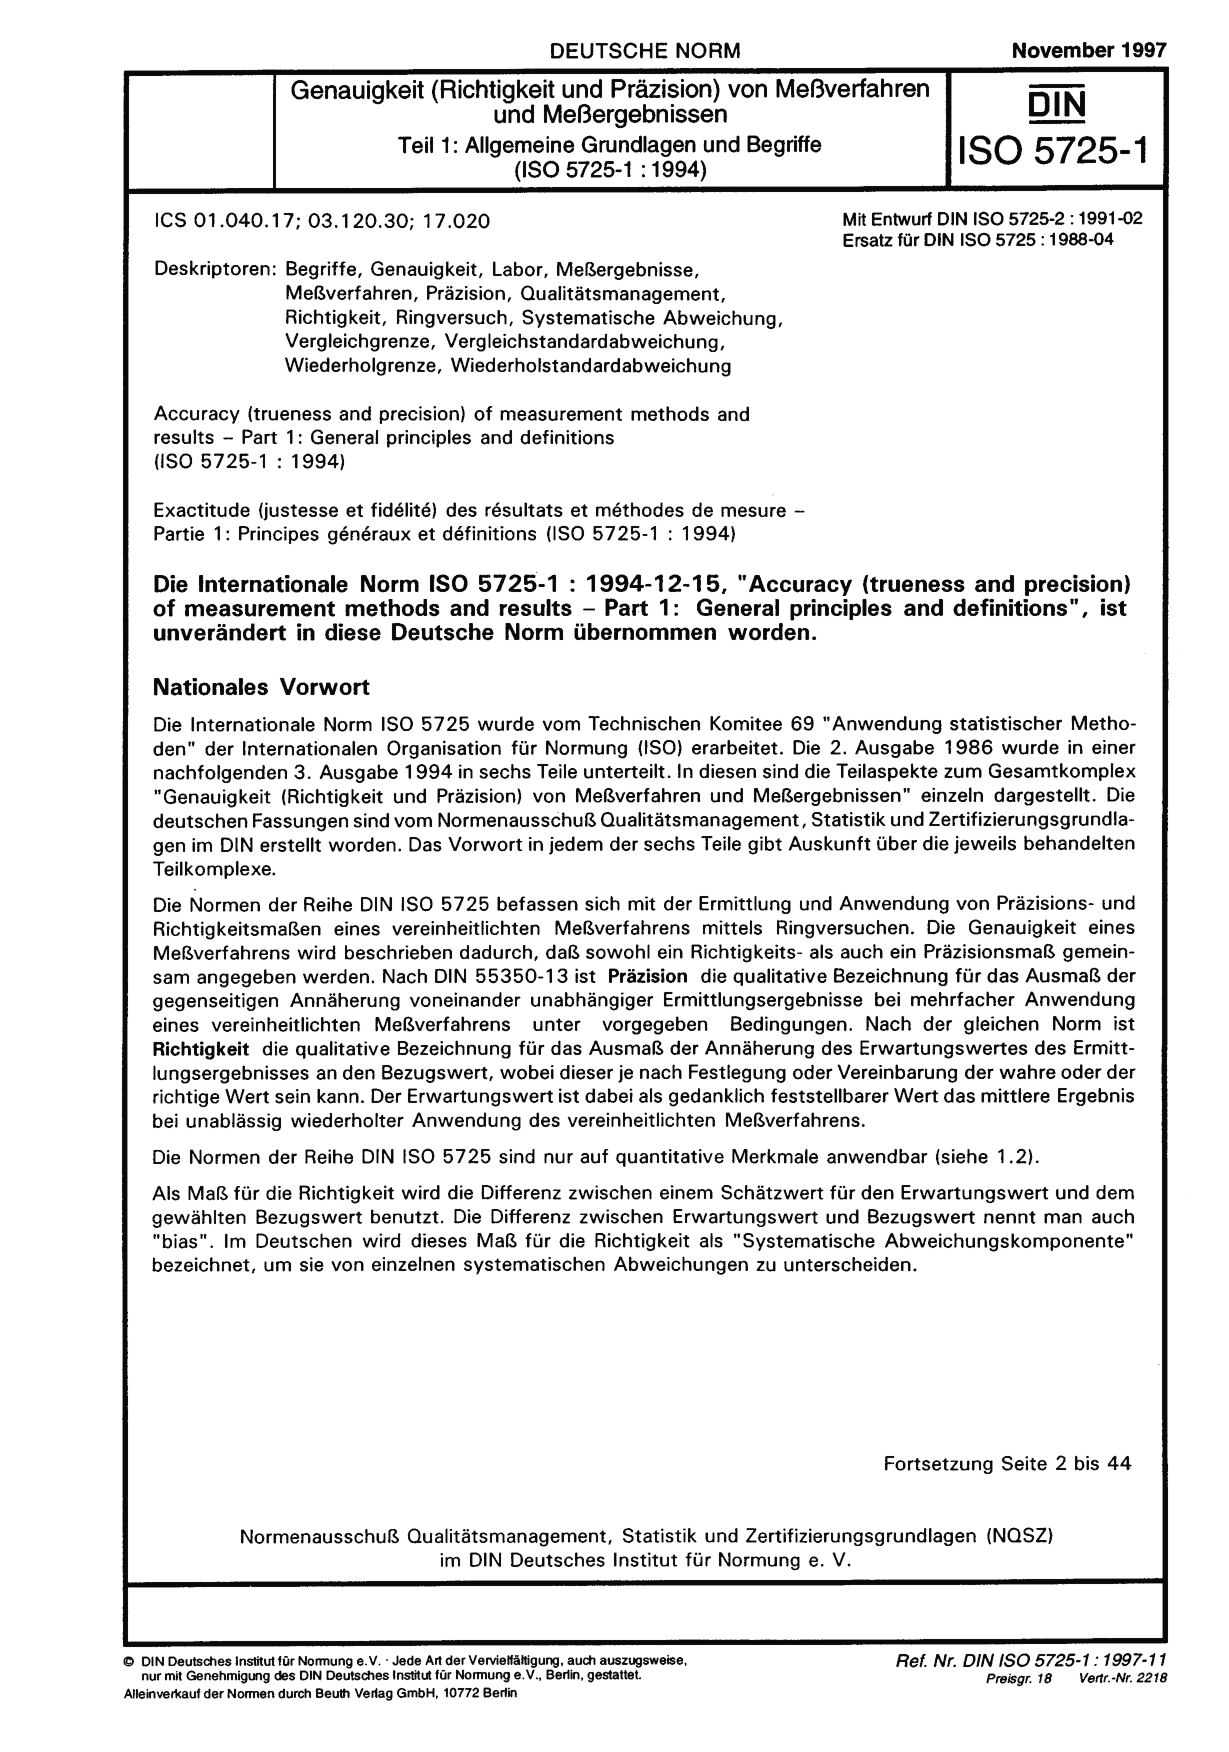 DIN ISO 5725-1:1997封面图